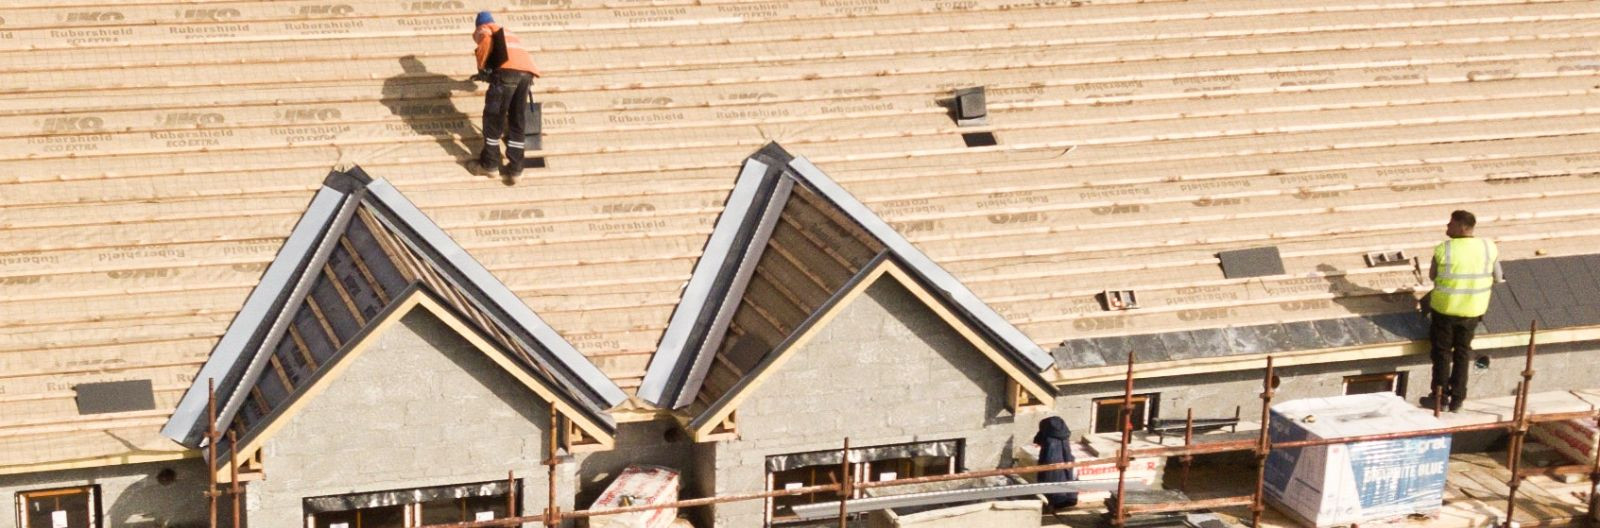 Kui ehitad oma kodu, on üks olulisemaid otsuseid, mida pead tegema, valik katusekattematerjali kohta. Õige katusekattematerjali valimine võib tagada maja turval